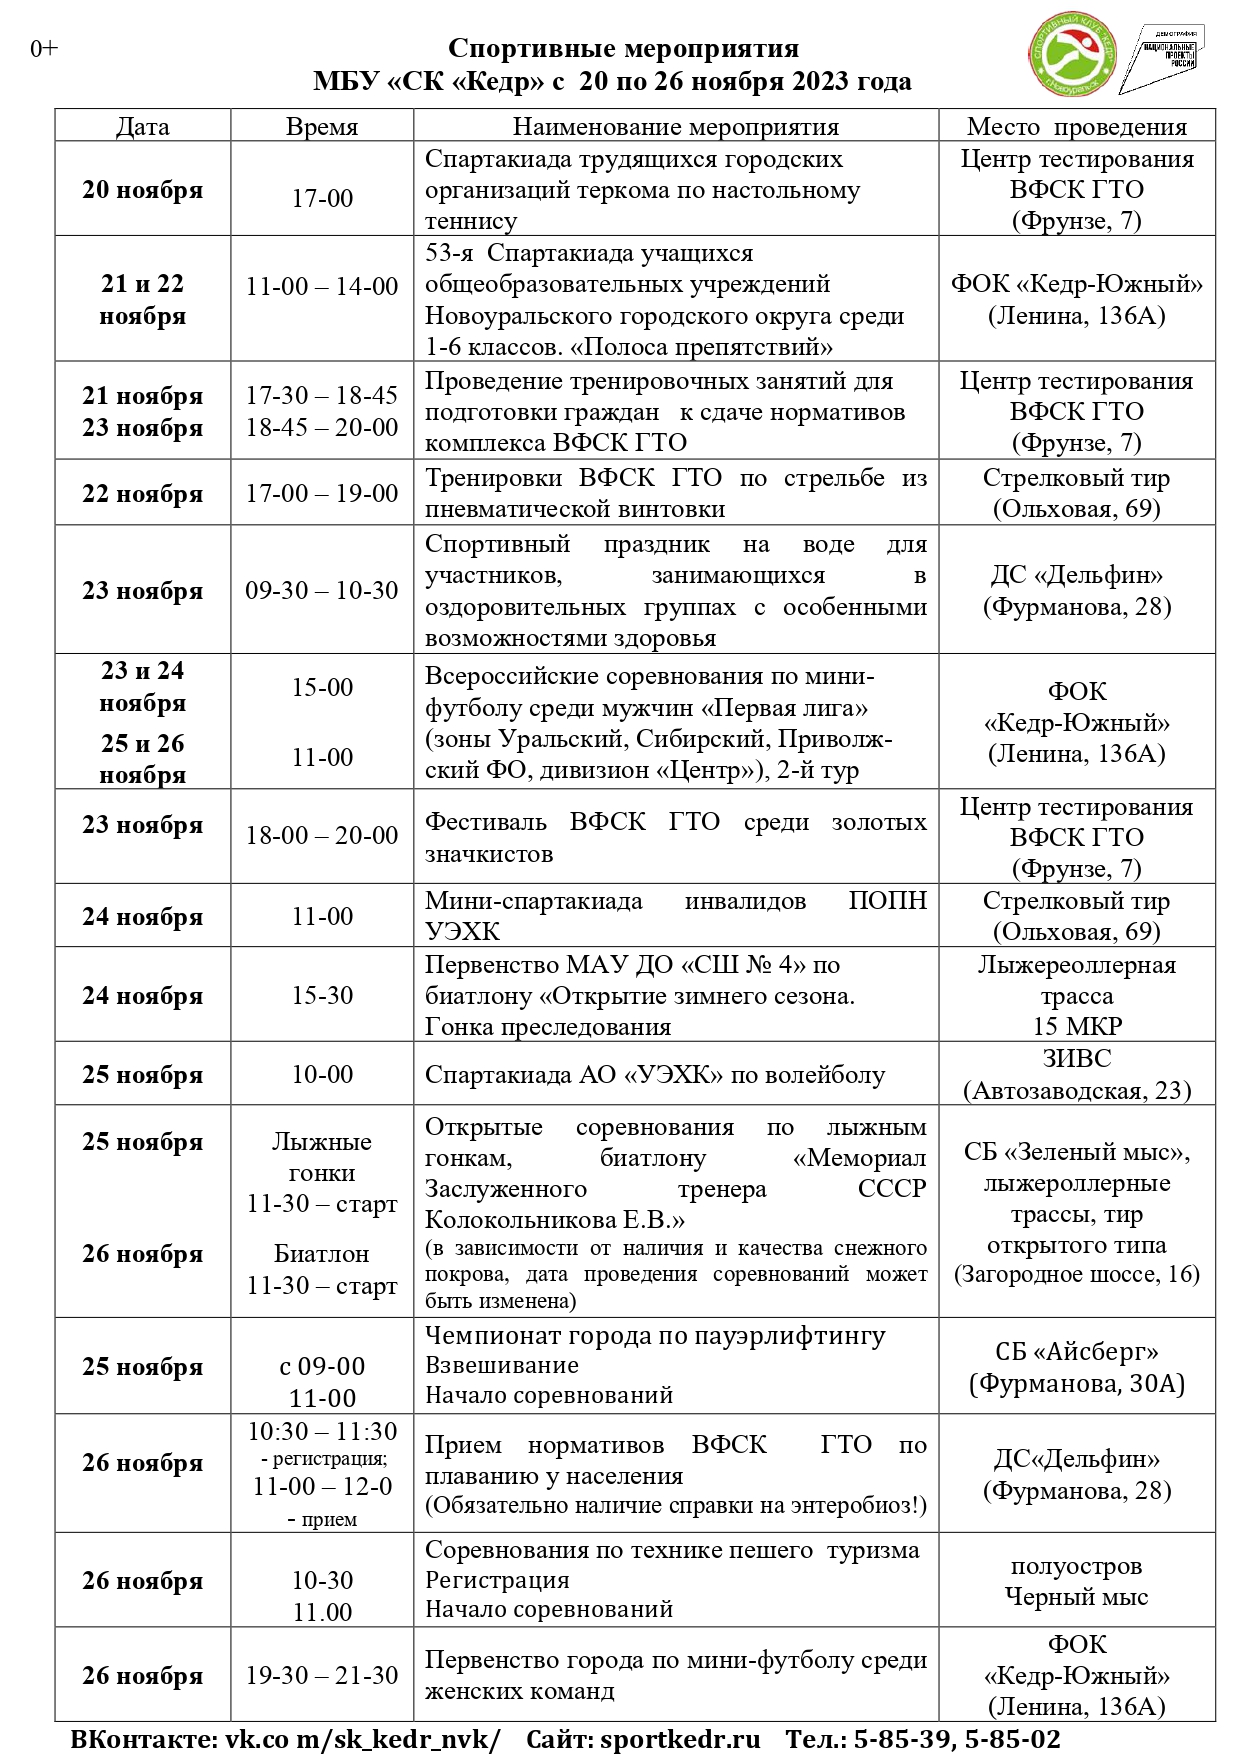 Календарь мероприятий Спортивного клуба "Кедр" с 20 по 26 ноября 2023г.